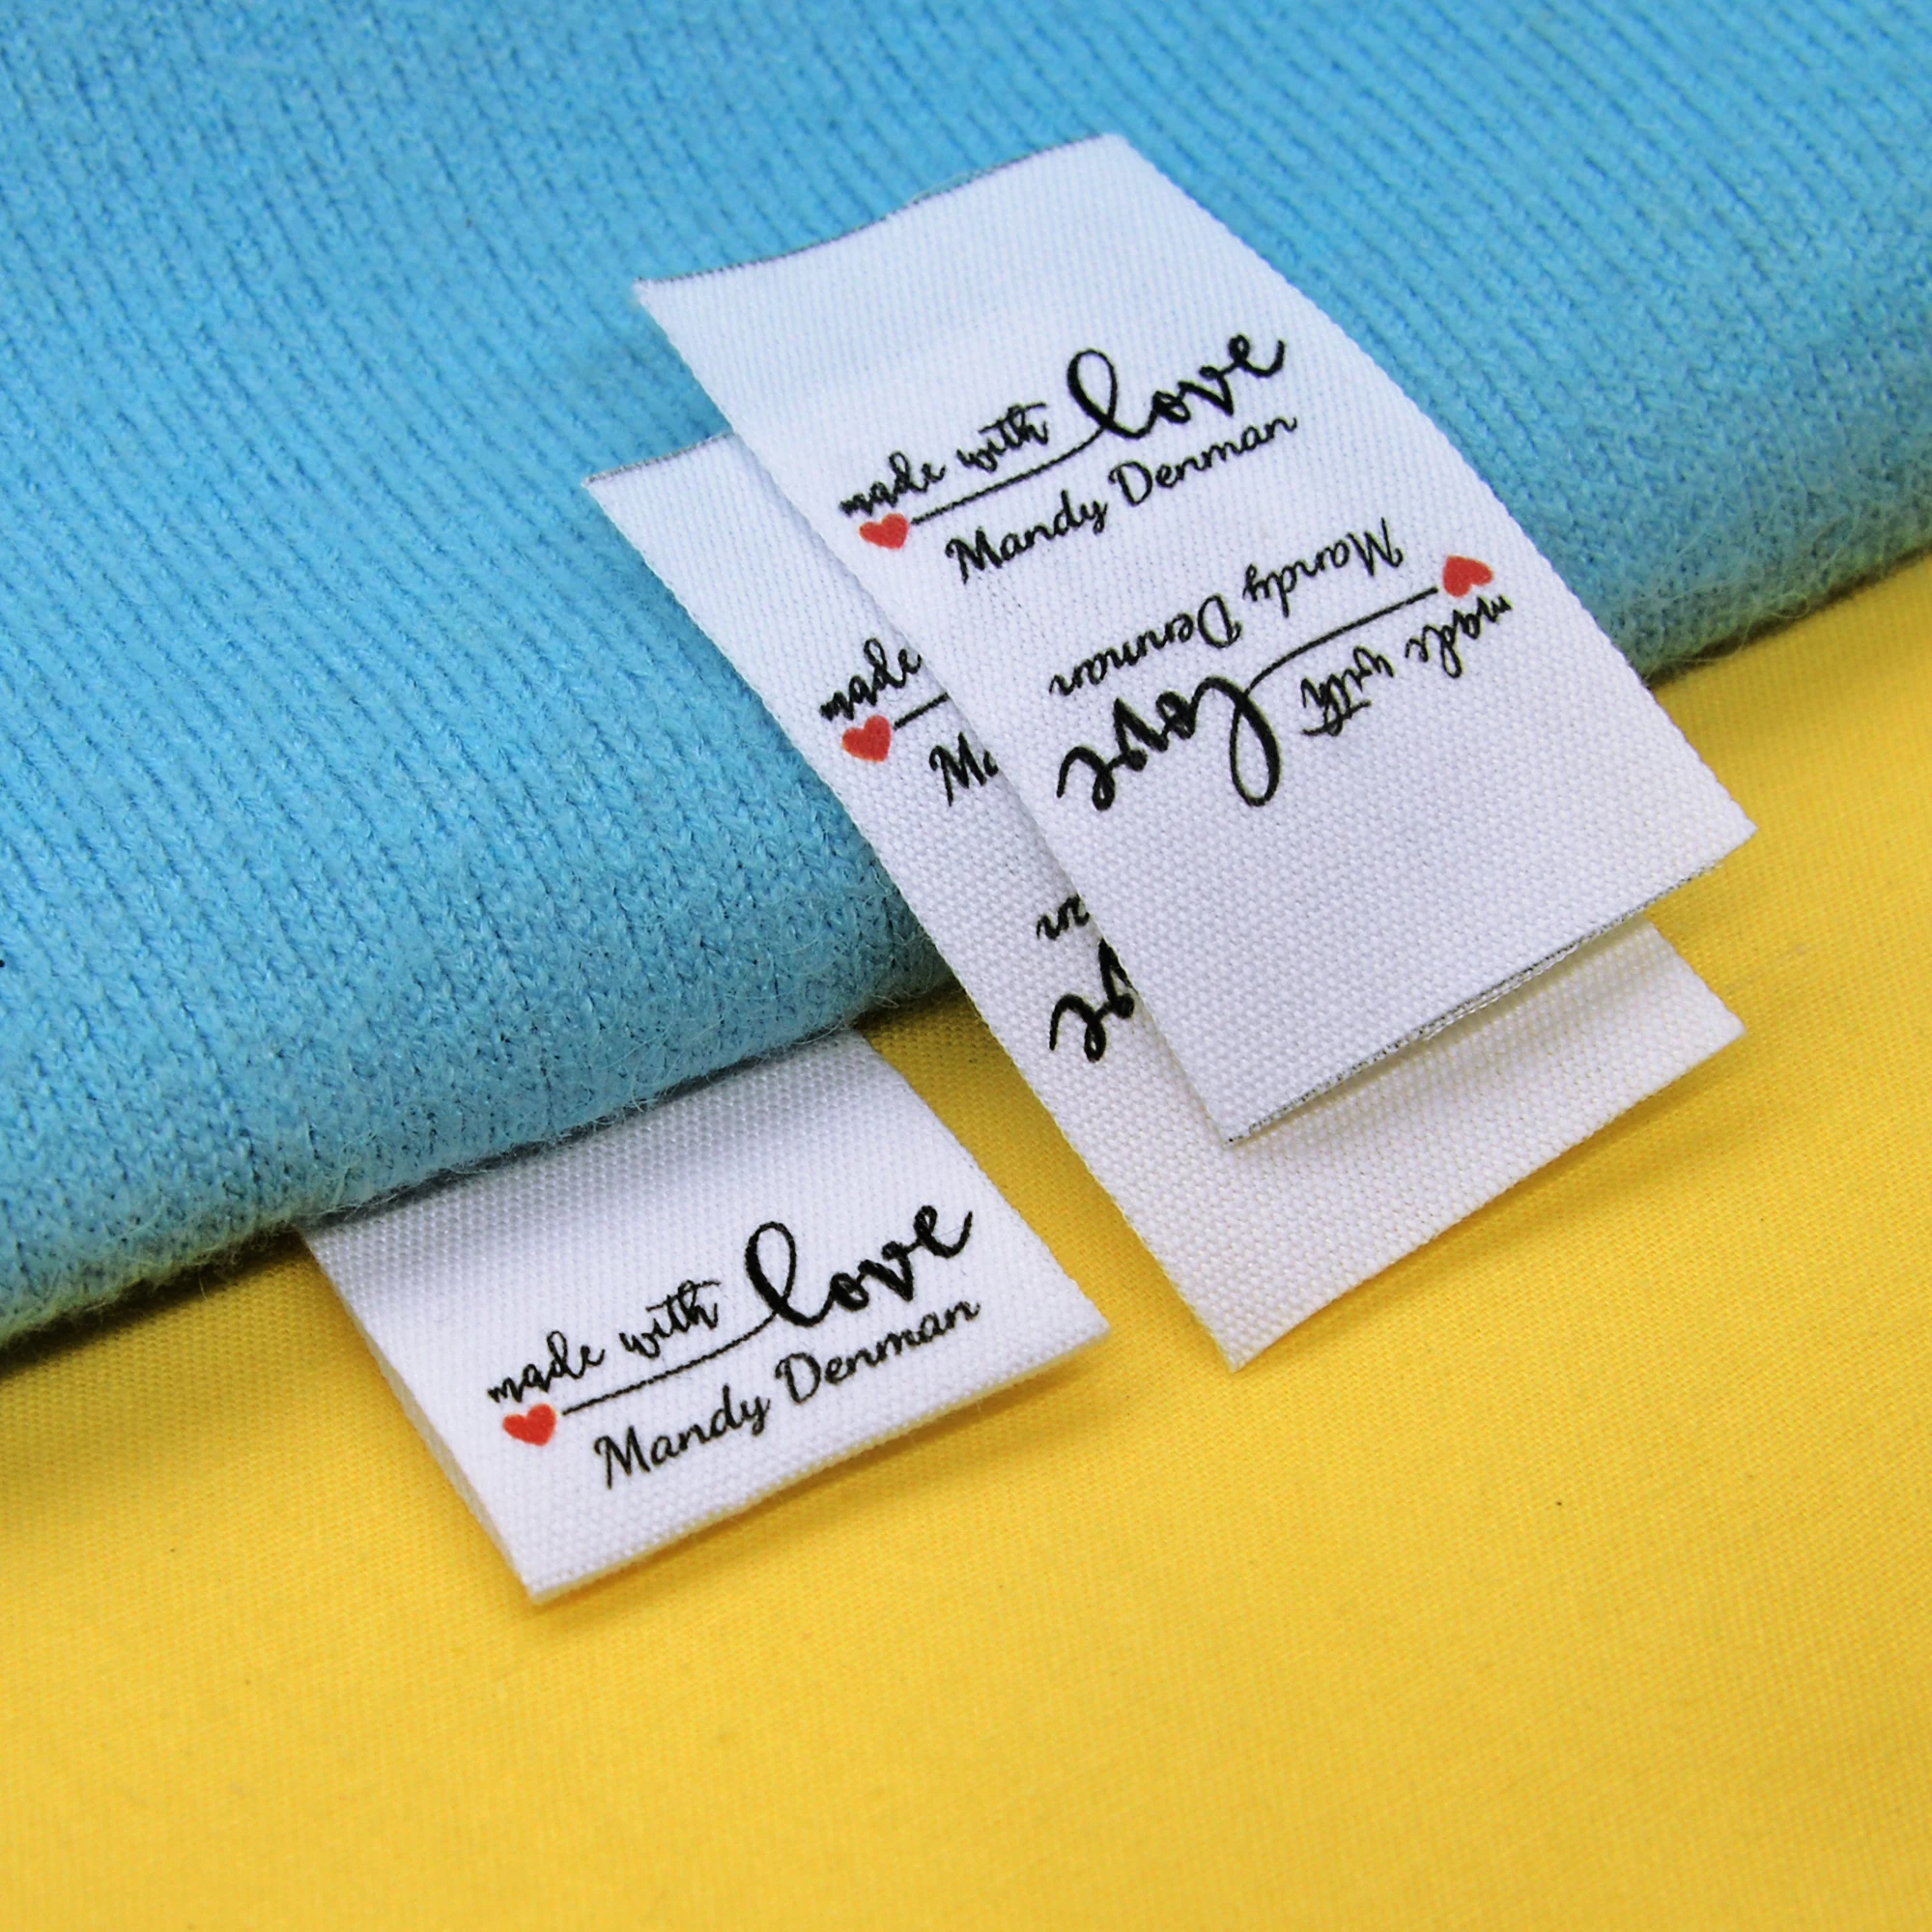 

Пользовательская швейная этикетка, складка, пользовательские этикетки для одежды-тканевые бирки с именами, логотип или текст, хлопковая лента, пользовательский дизайн (FR074)